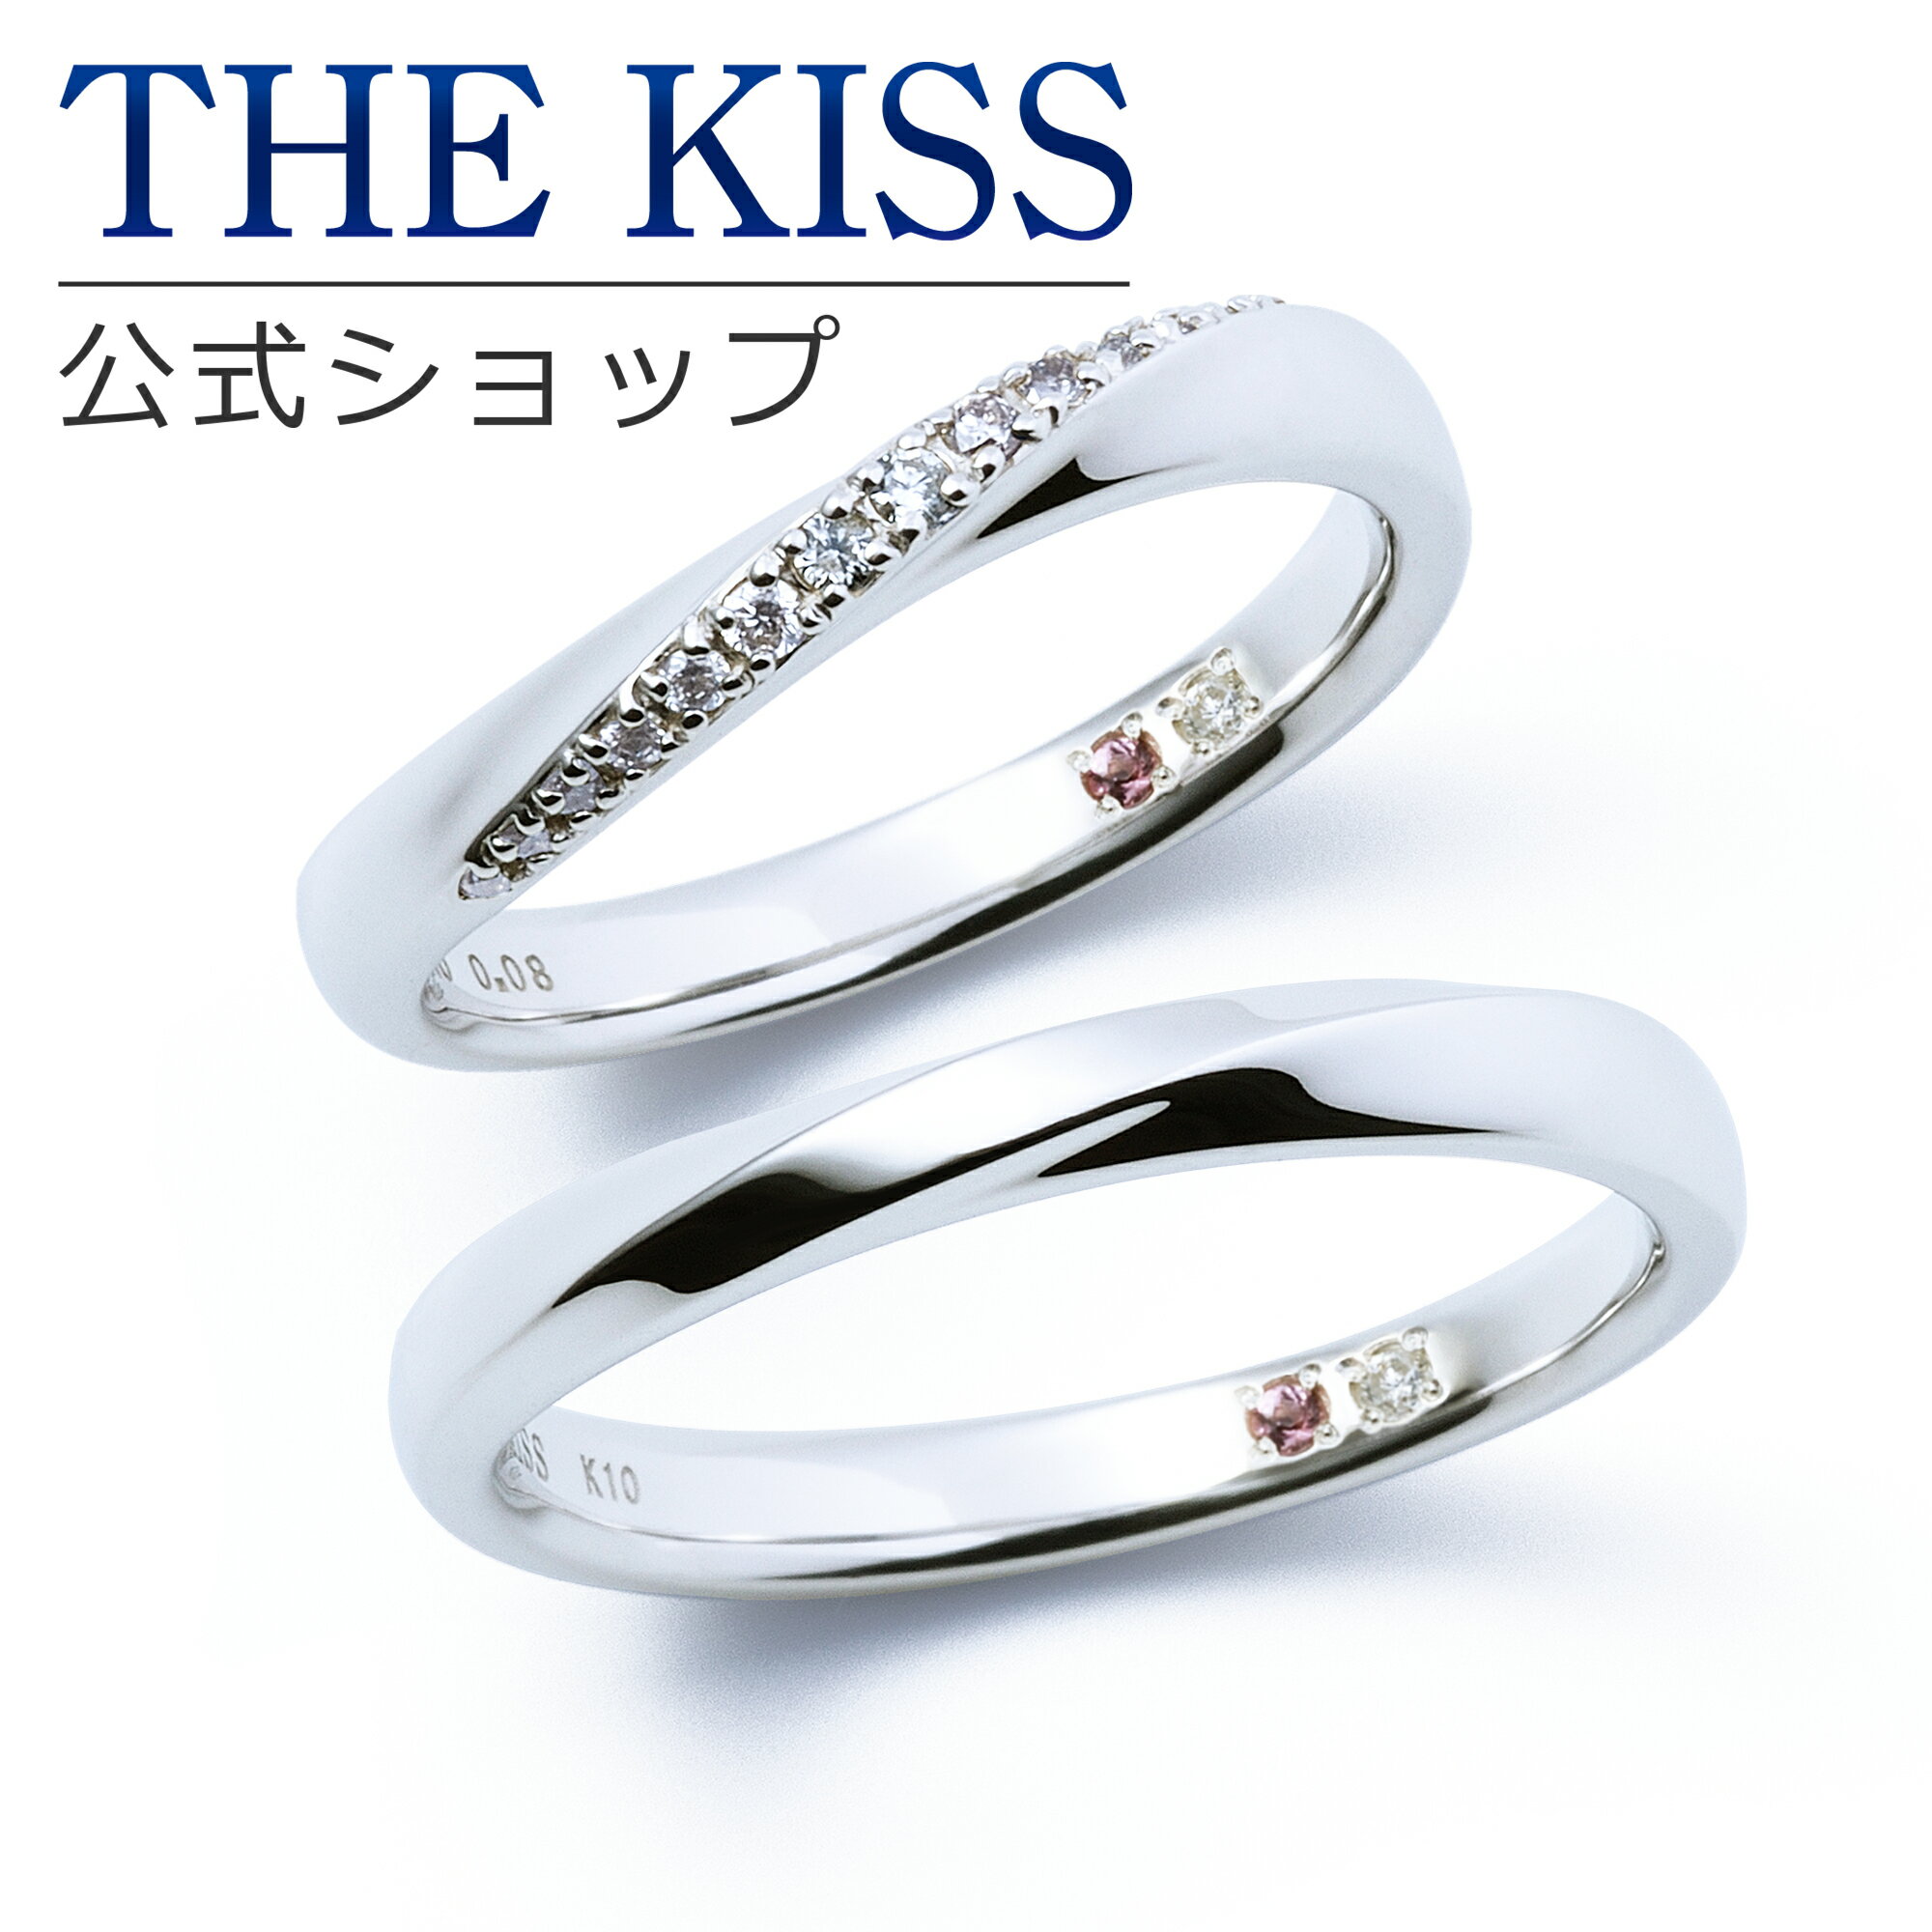 【ラッピング無料】【刻印無料】【THE KISS Anniversary】 K10 ホワイトゴールド マリッジ リング 結婚指輪 ペアリング wg THE KISS ザキッス リング・指輪 ウェーブ ひねり 7621122031A-7621122032A 誕生石 セット シンプル 男性 女性 2個セット ブライダル